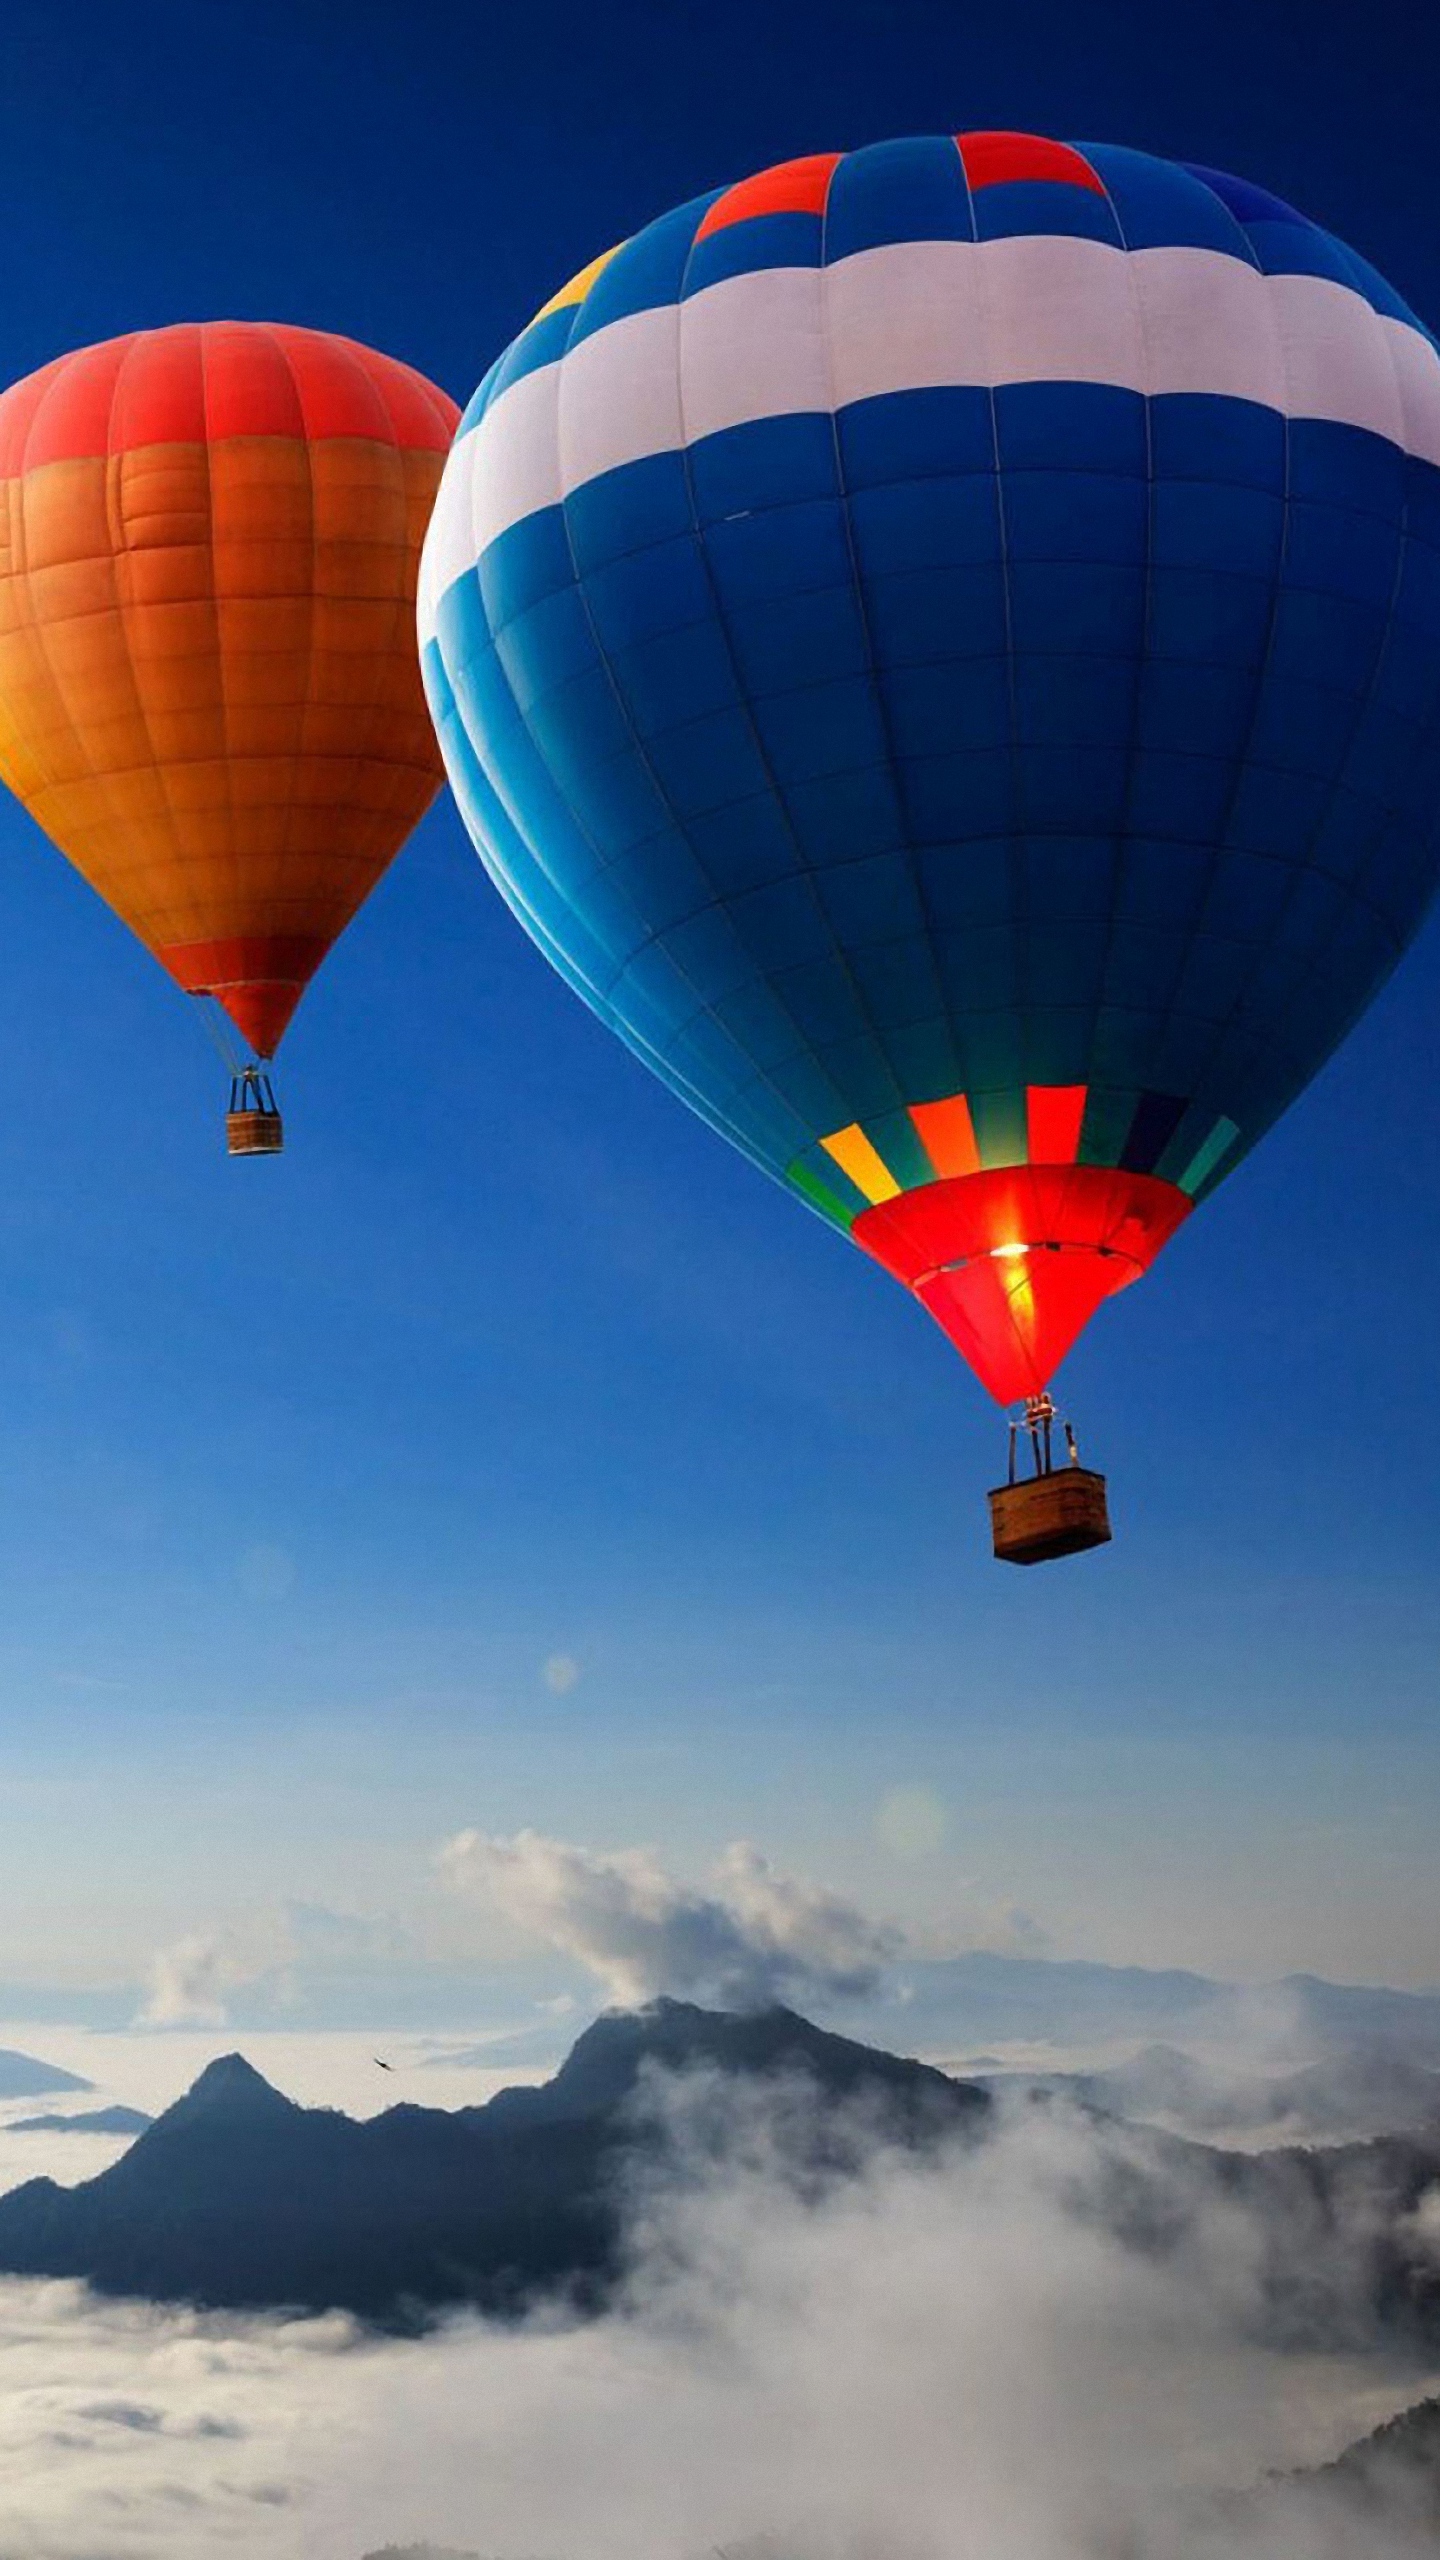 Hd Hot Air Balloon Rainbow Hills Galaxy Note 4 Wallpapers - Agadir Hot Air Balloon - HD Wallpaper 